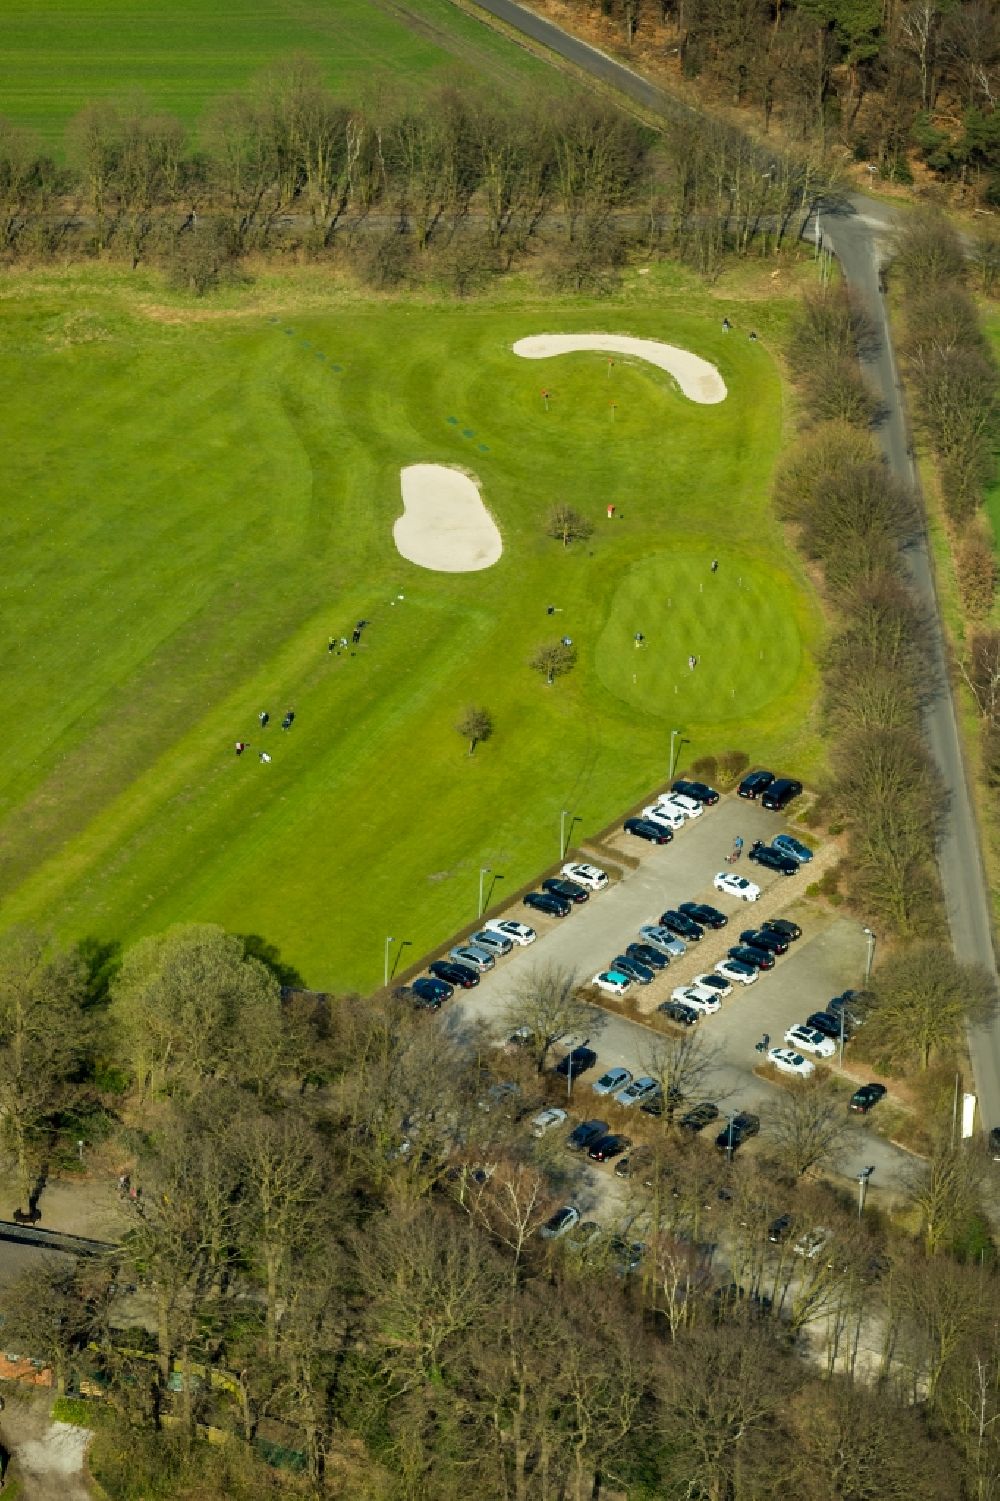 Hünxe aus der Vogelperspektive: Golfplatz des Golf Club Hünxerwald e.V. am Hardtbergweg in Hünxe im Bundesland Nordrhein-Westfalen, Deutschland